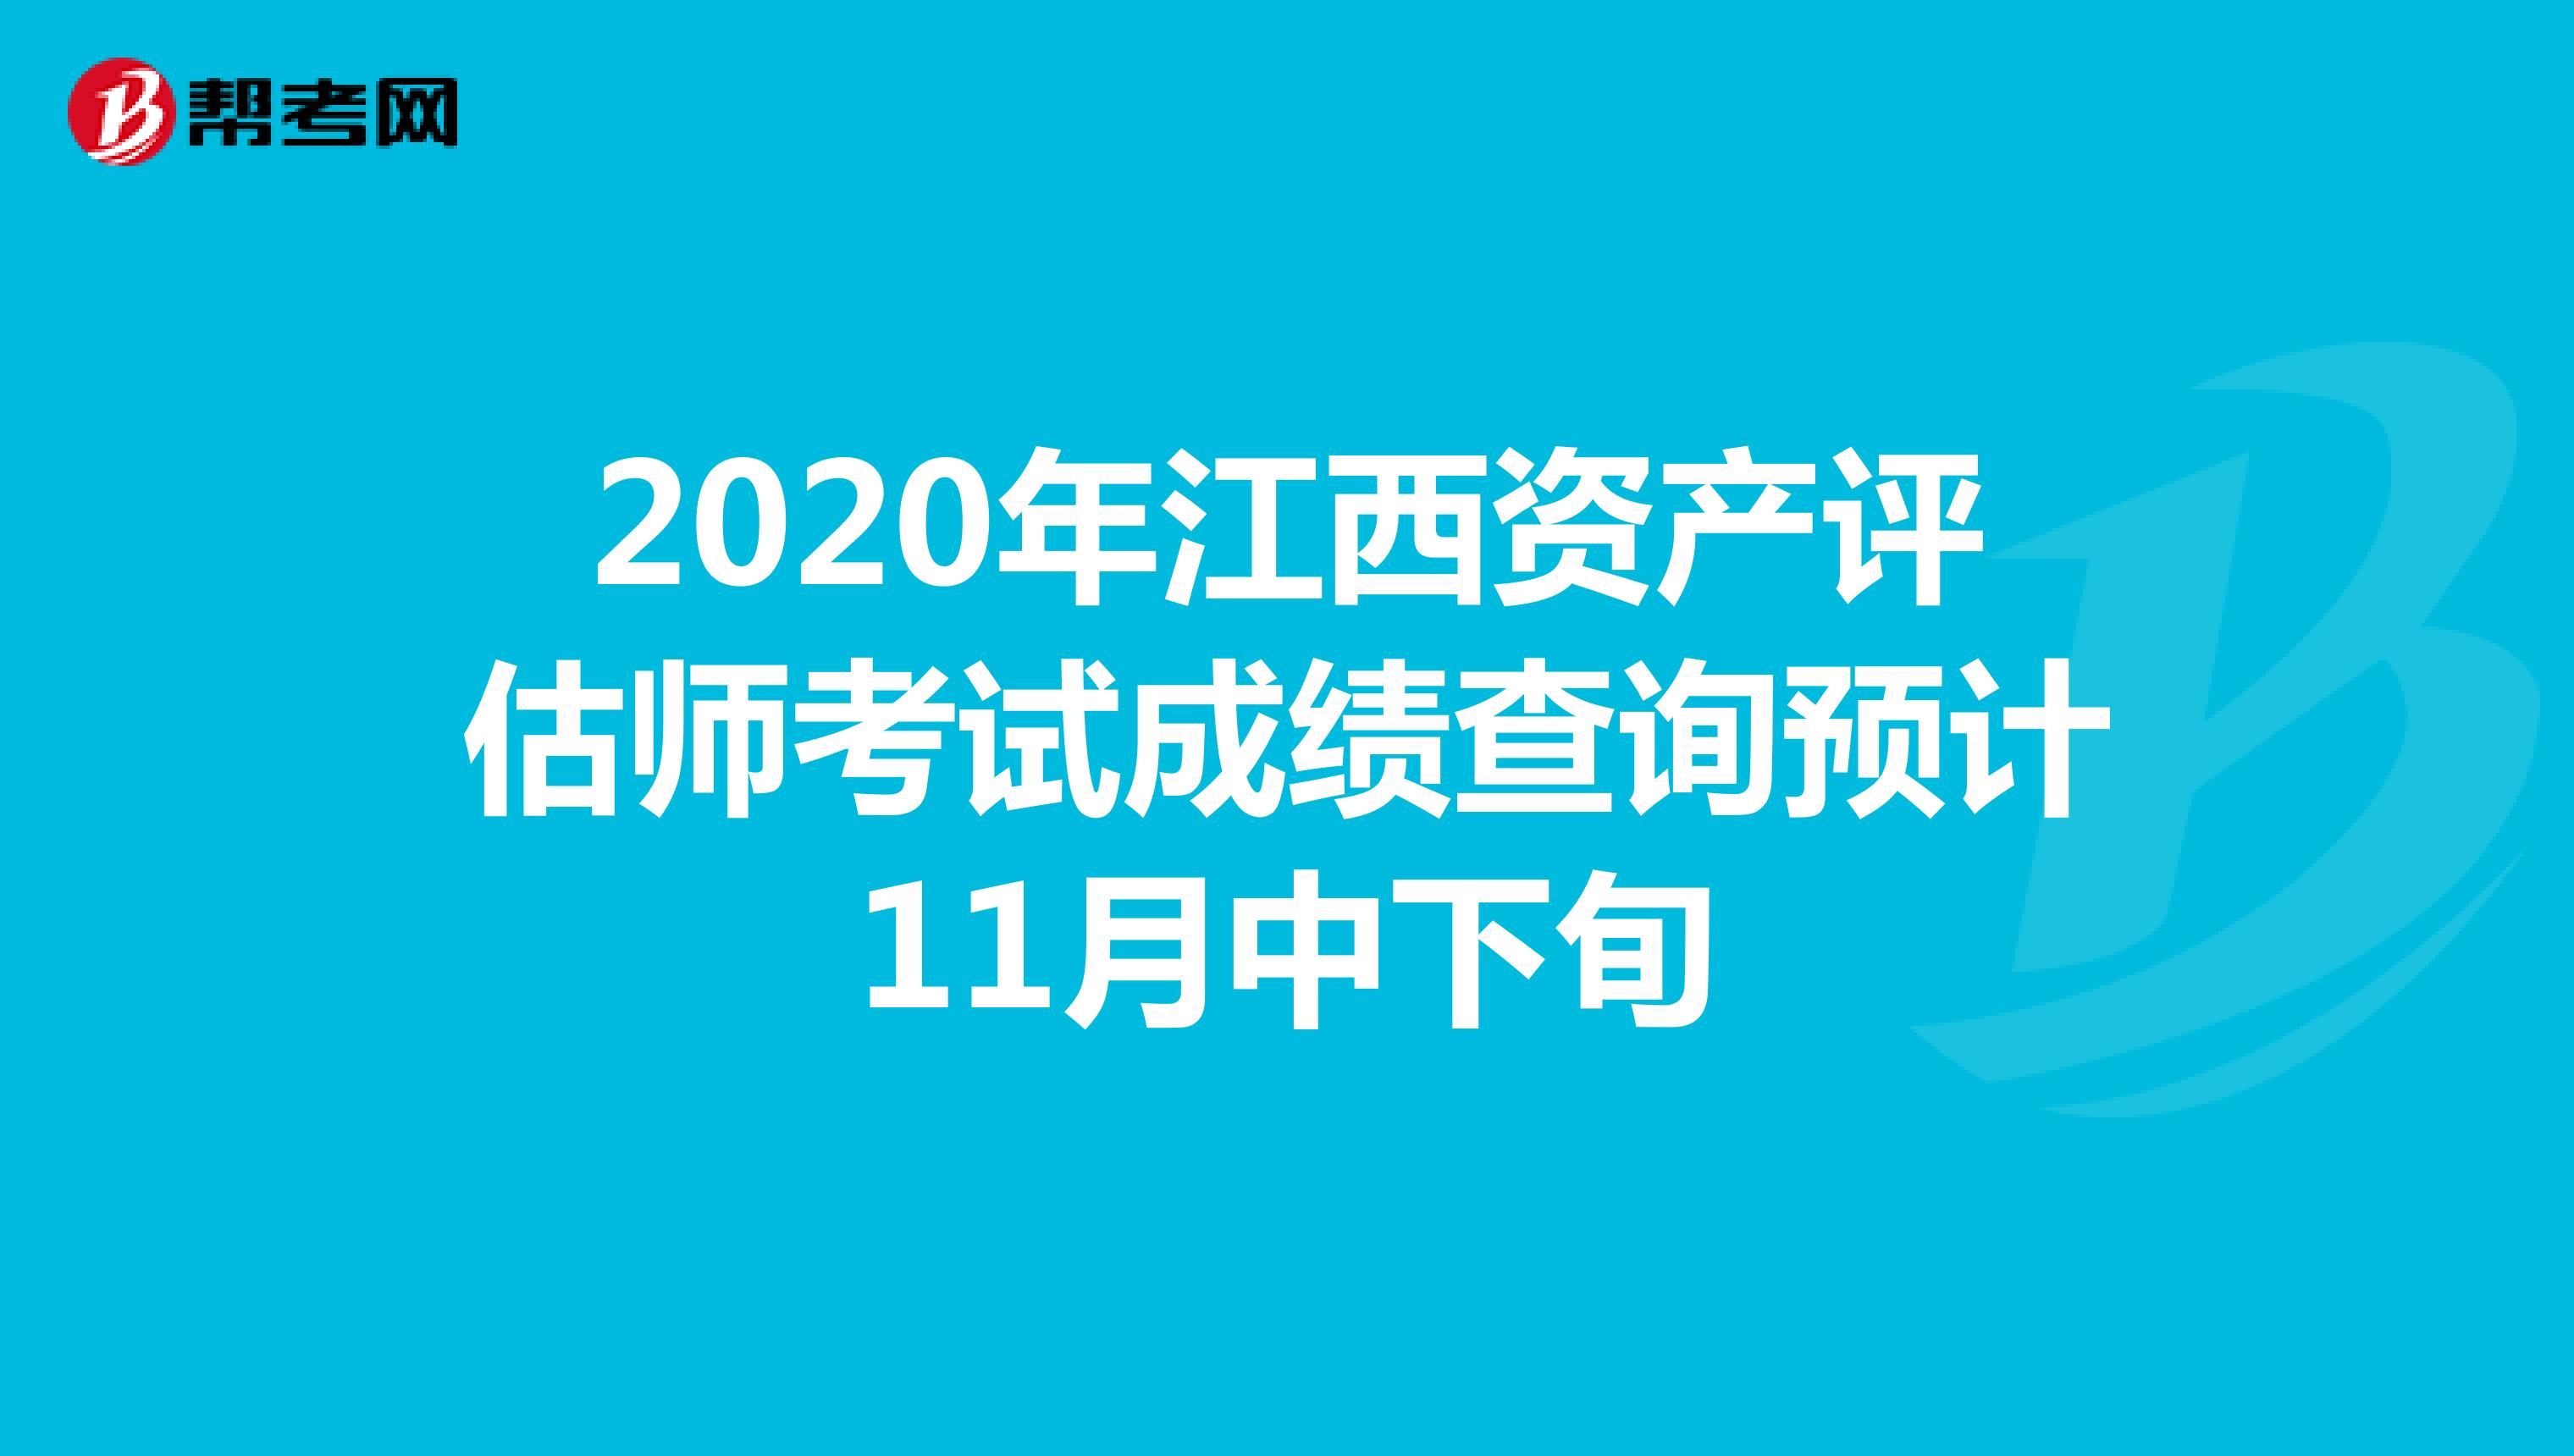 2020年江西资产评估师考试成绩查询预计11月中下旬